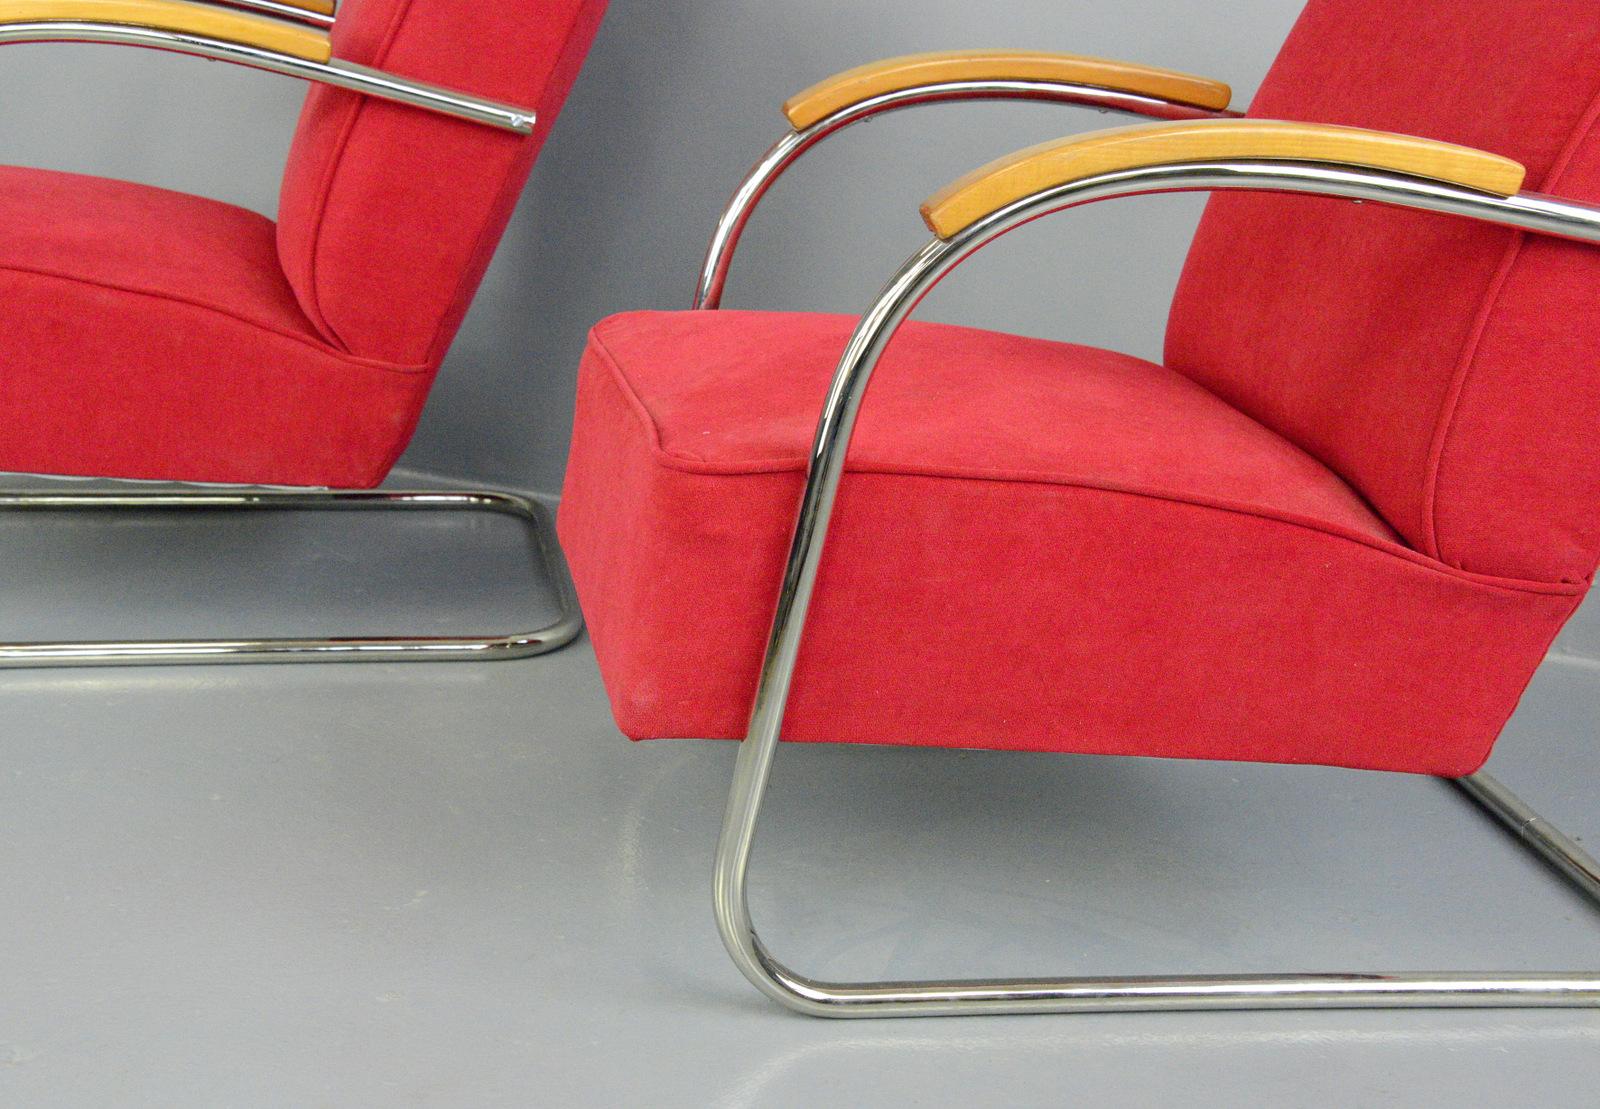 Bauhaus-Sessel von Mucke Melder, ca. 1930er Jahre.

- Der Preis gilt für das Paar
- Gefederte Sitze und Rückenlehne
- Verchromte Stahlrohr-Auslegerrahmen
- Neue rote Samtpolsterung
- Modell FN21
- Produziert von Mucke Melder
- Tschechisch,